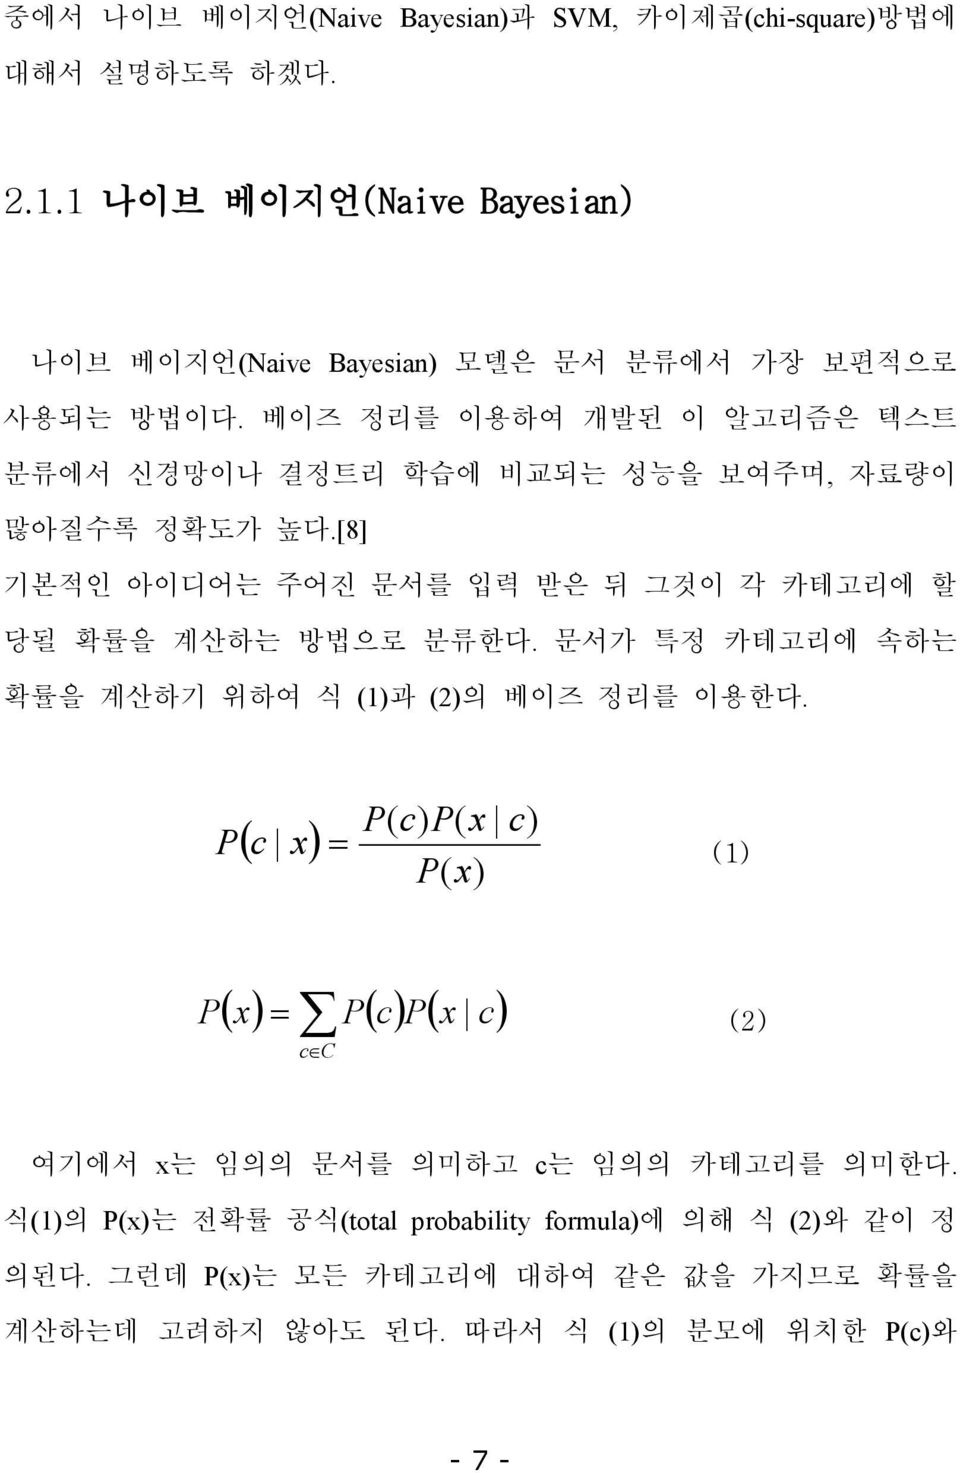 문서가 특정 카테고리에 속하는 확률을 계산하기 위하여 식 (1)과 (2)의 베이즈 정리를 이용한다.